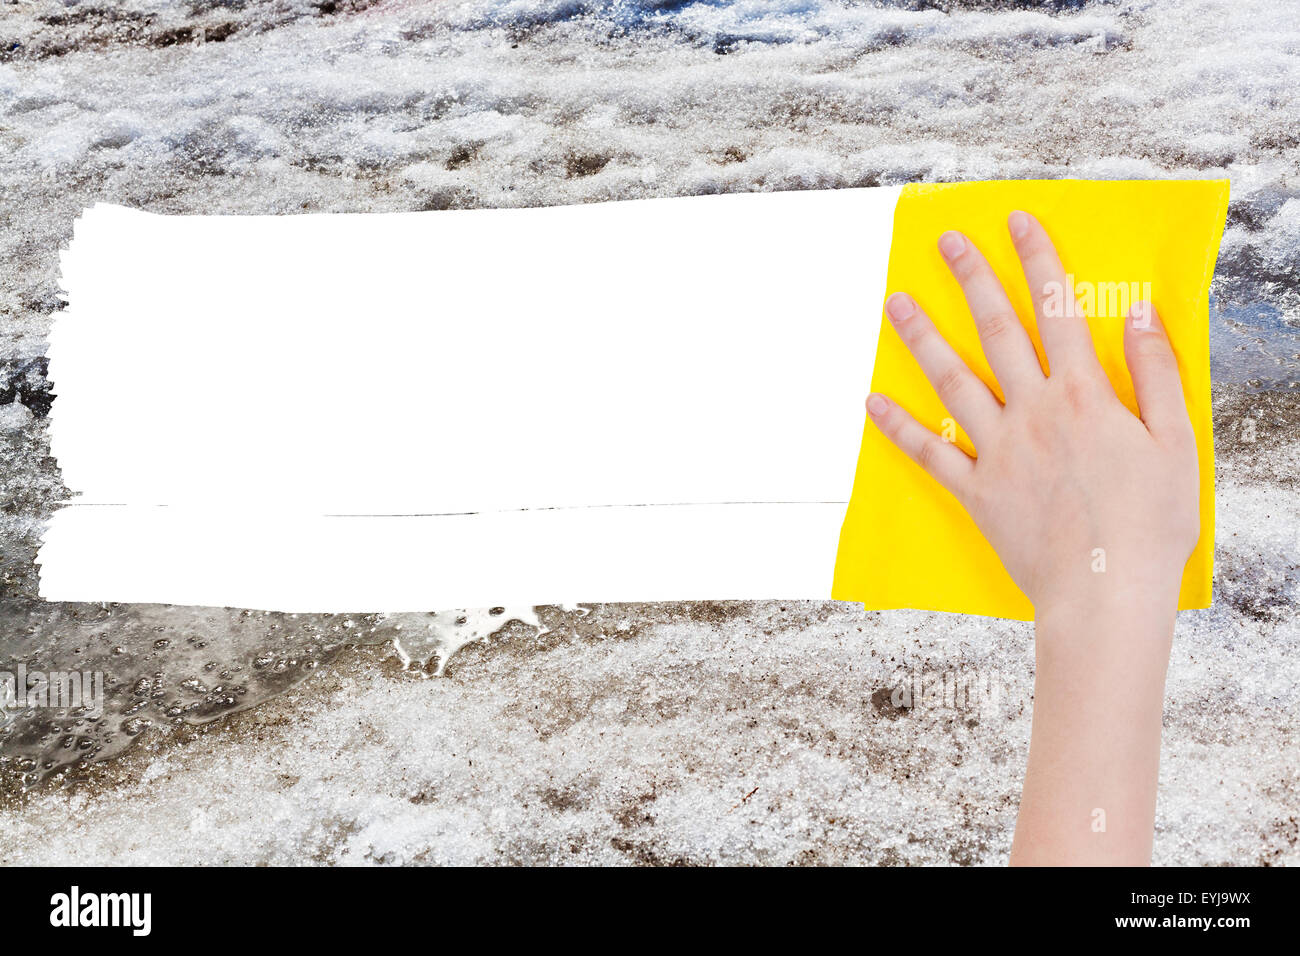 Wetter-Konzept - Hand löscht Schneeschmelze durch gelbe Lappen aus Bild und weißem leeren textfreiraum erscheinen Stockfoto